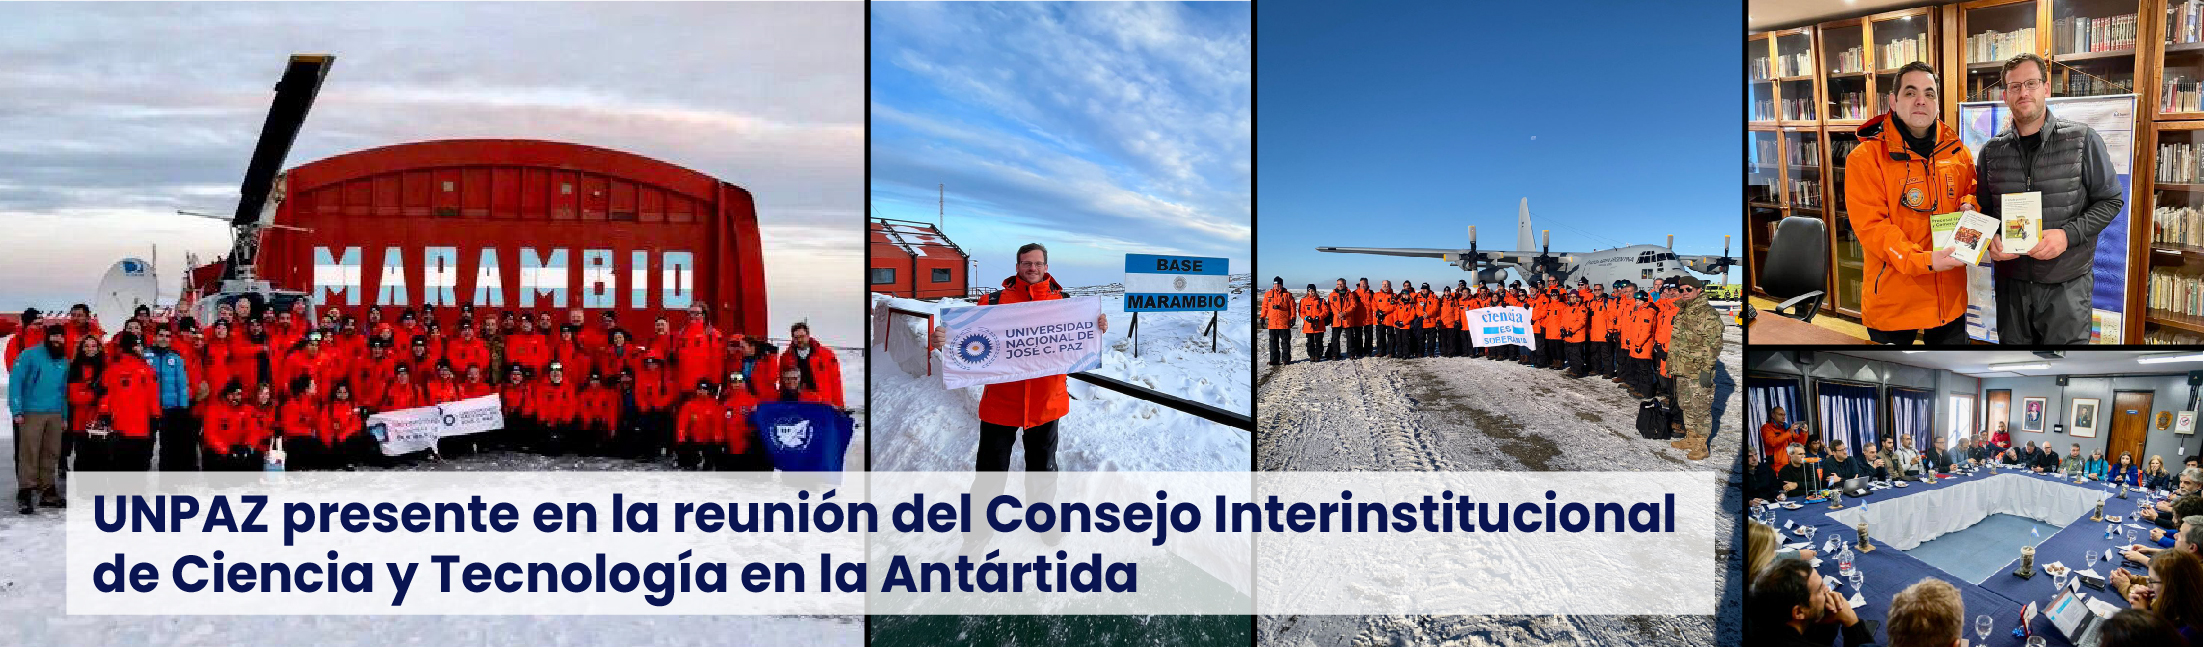 UNPAZ presente en la reunión del Consejo Interinstitucional de Ciencia y Tecnología en la Antártida